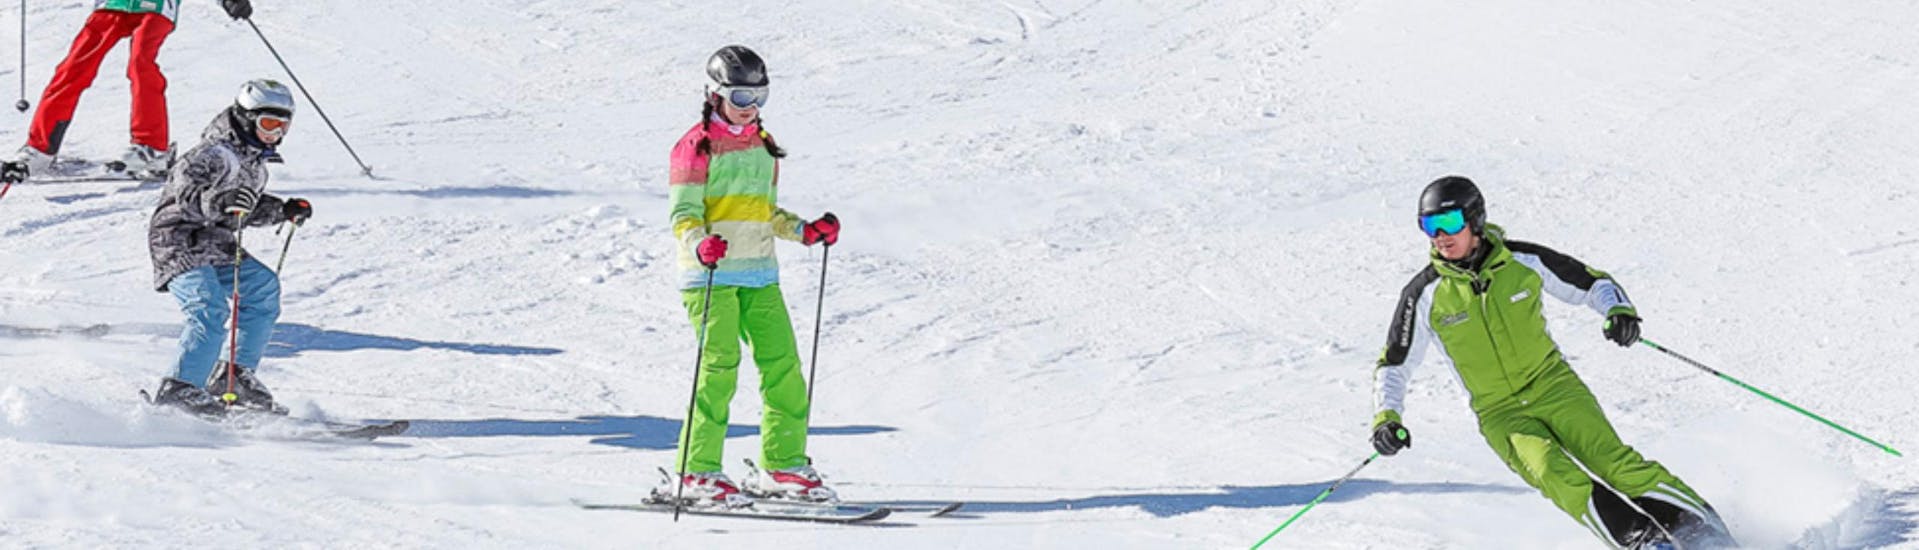 Skilessen voor kinderen (3-14 jaar) van alle niveaus.